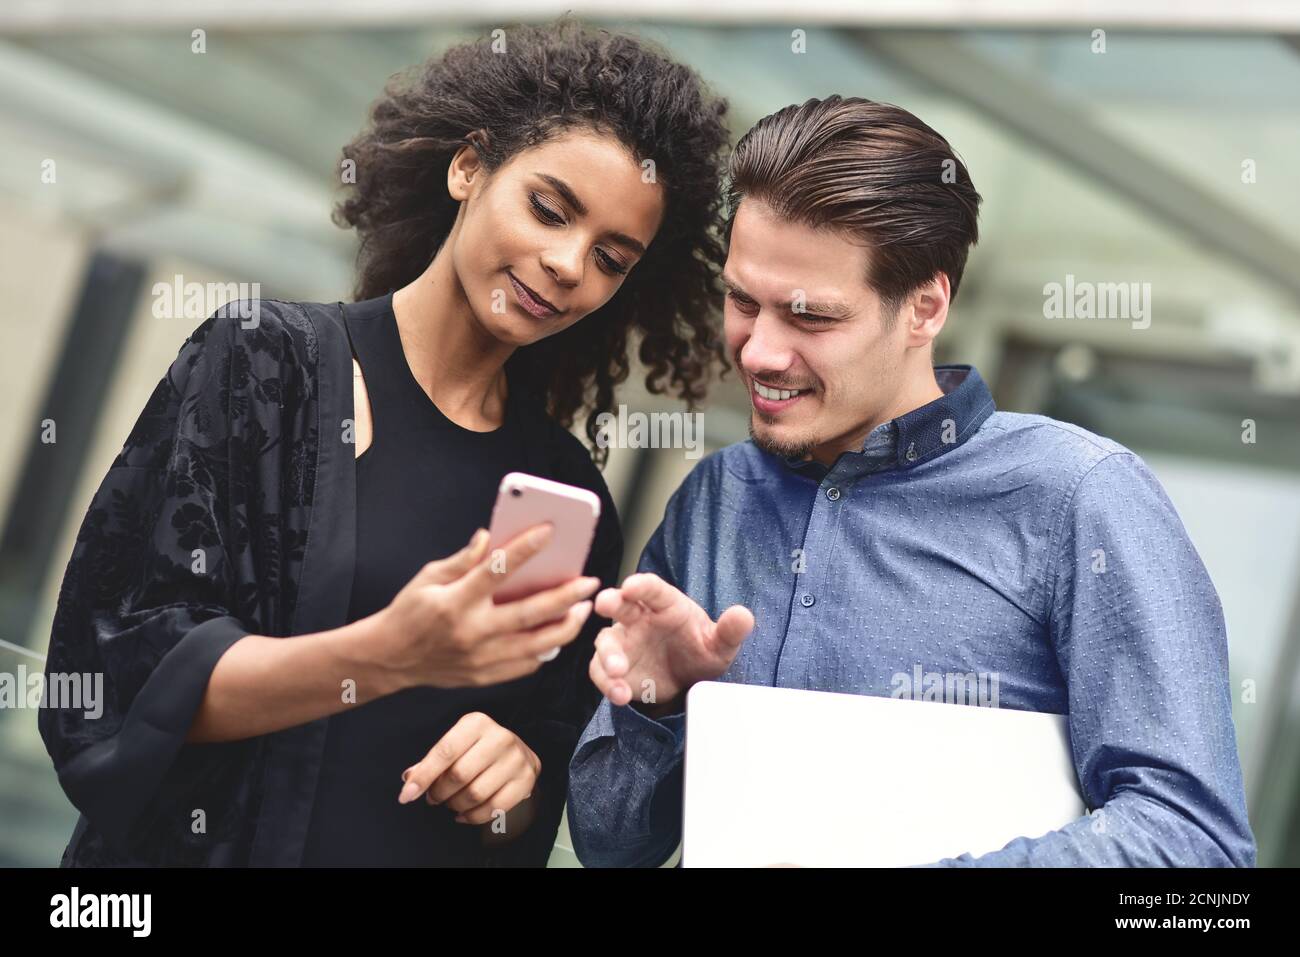 Réunion d'affaires. Homme et femme discutant du travail et regardant l'écran du smartphone. Travailler ensemble en plein air. Banque D'Images